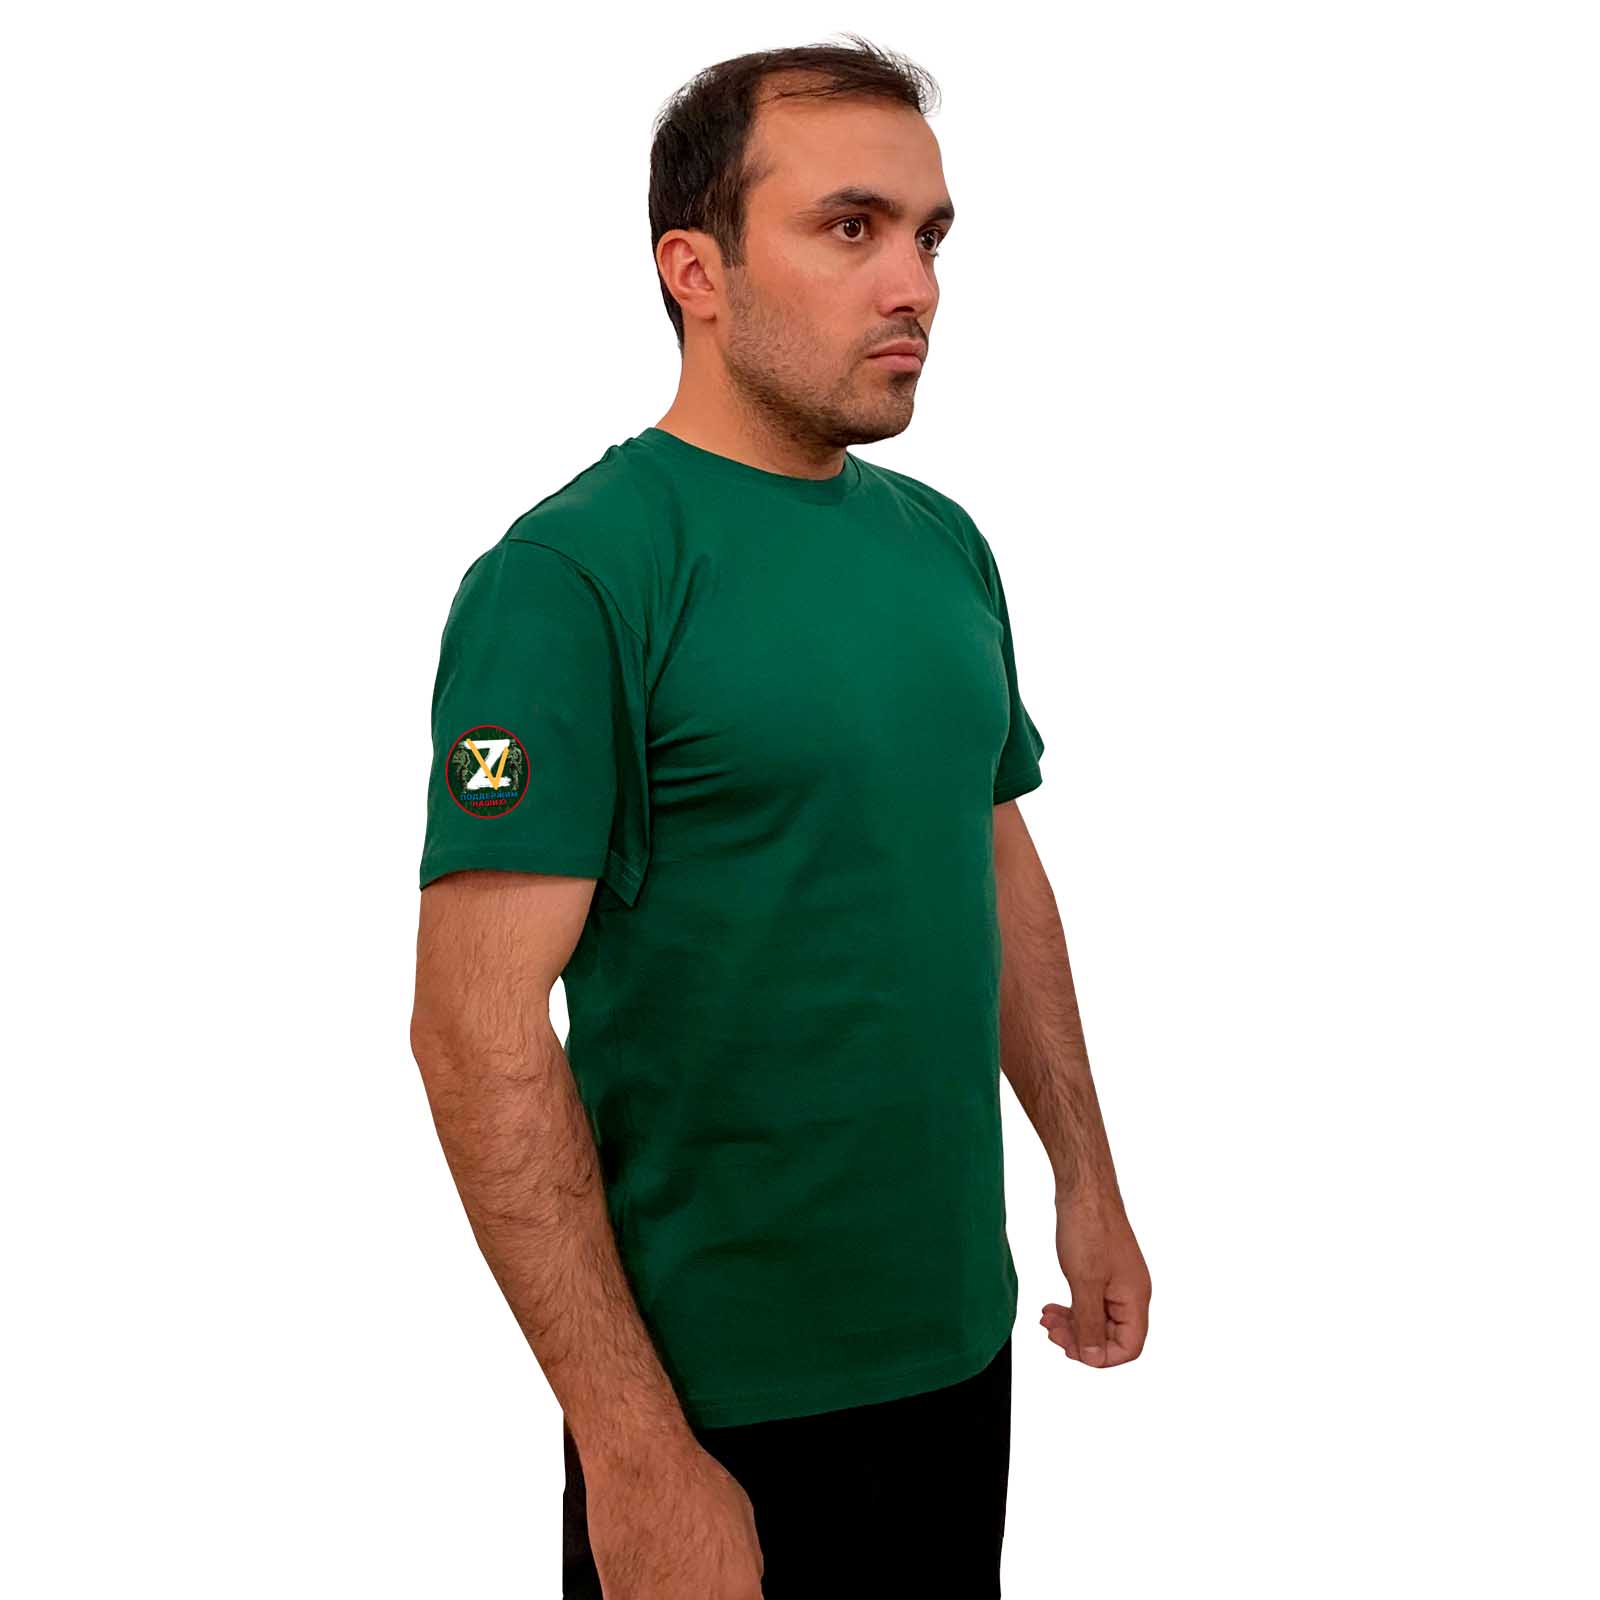 Зелёная футболка с символами ZV на рукаве